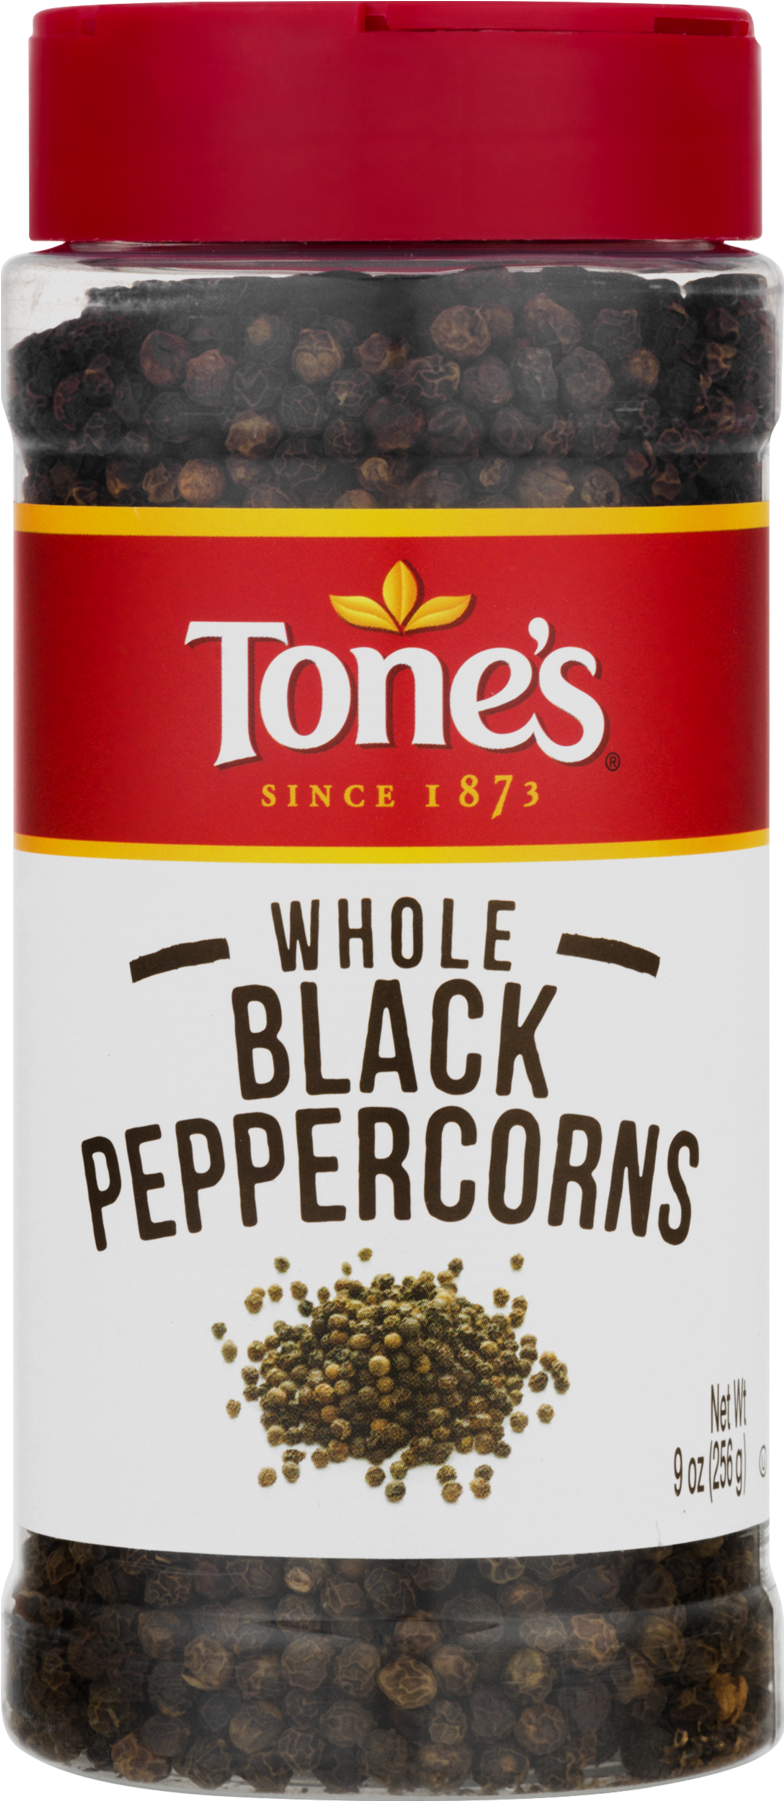 A Label Of A Peppercorn